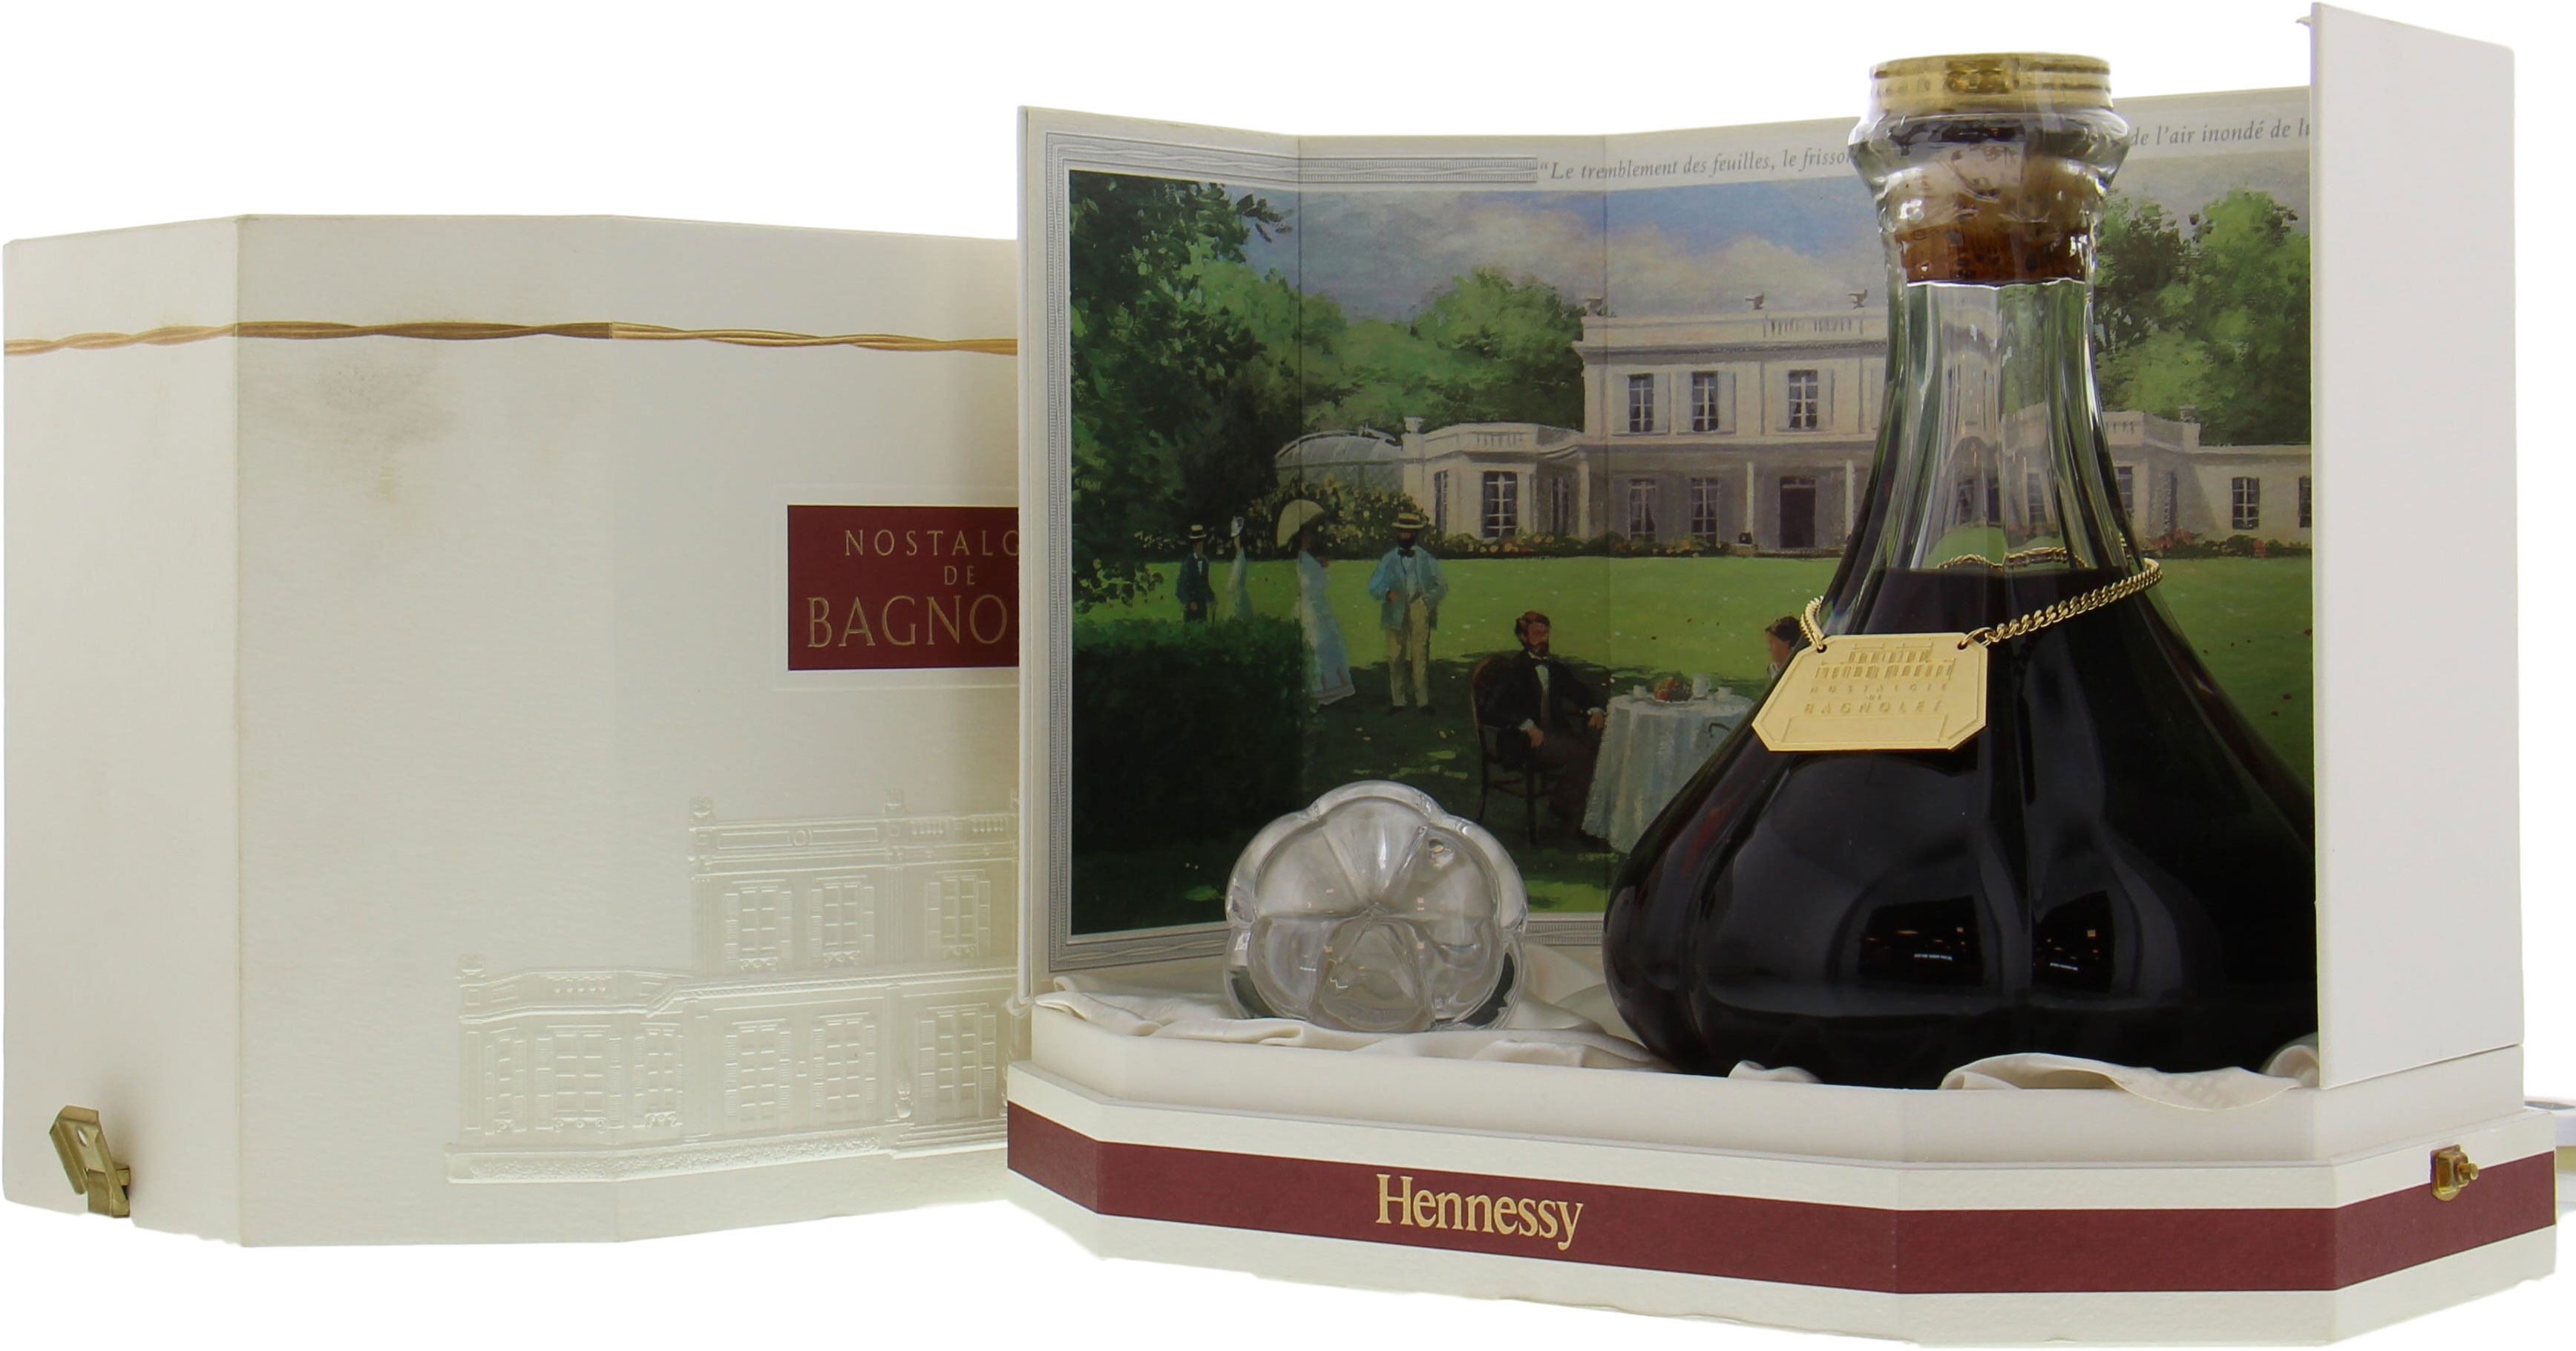 Hennessy - Nostalgie de Bagnolet NV In Original Carton